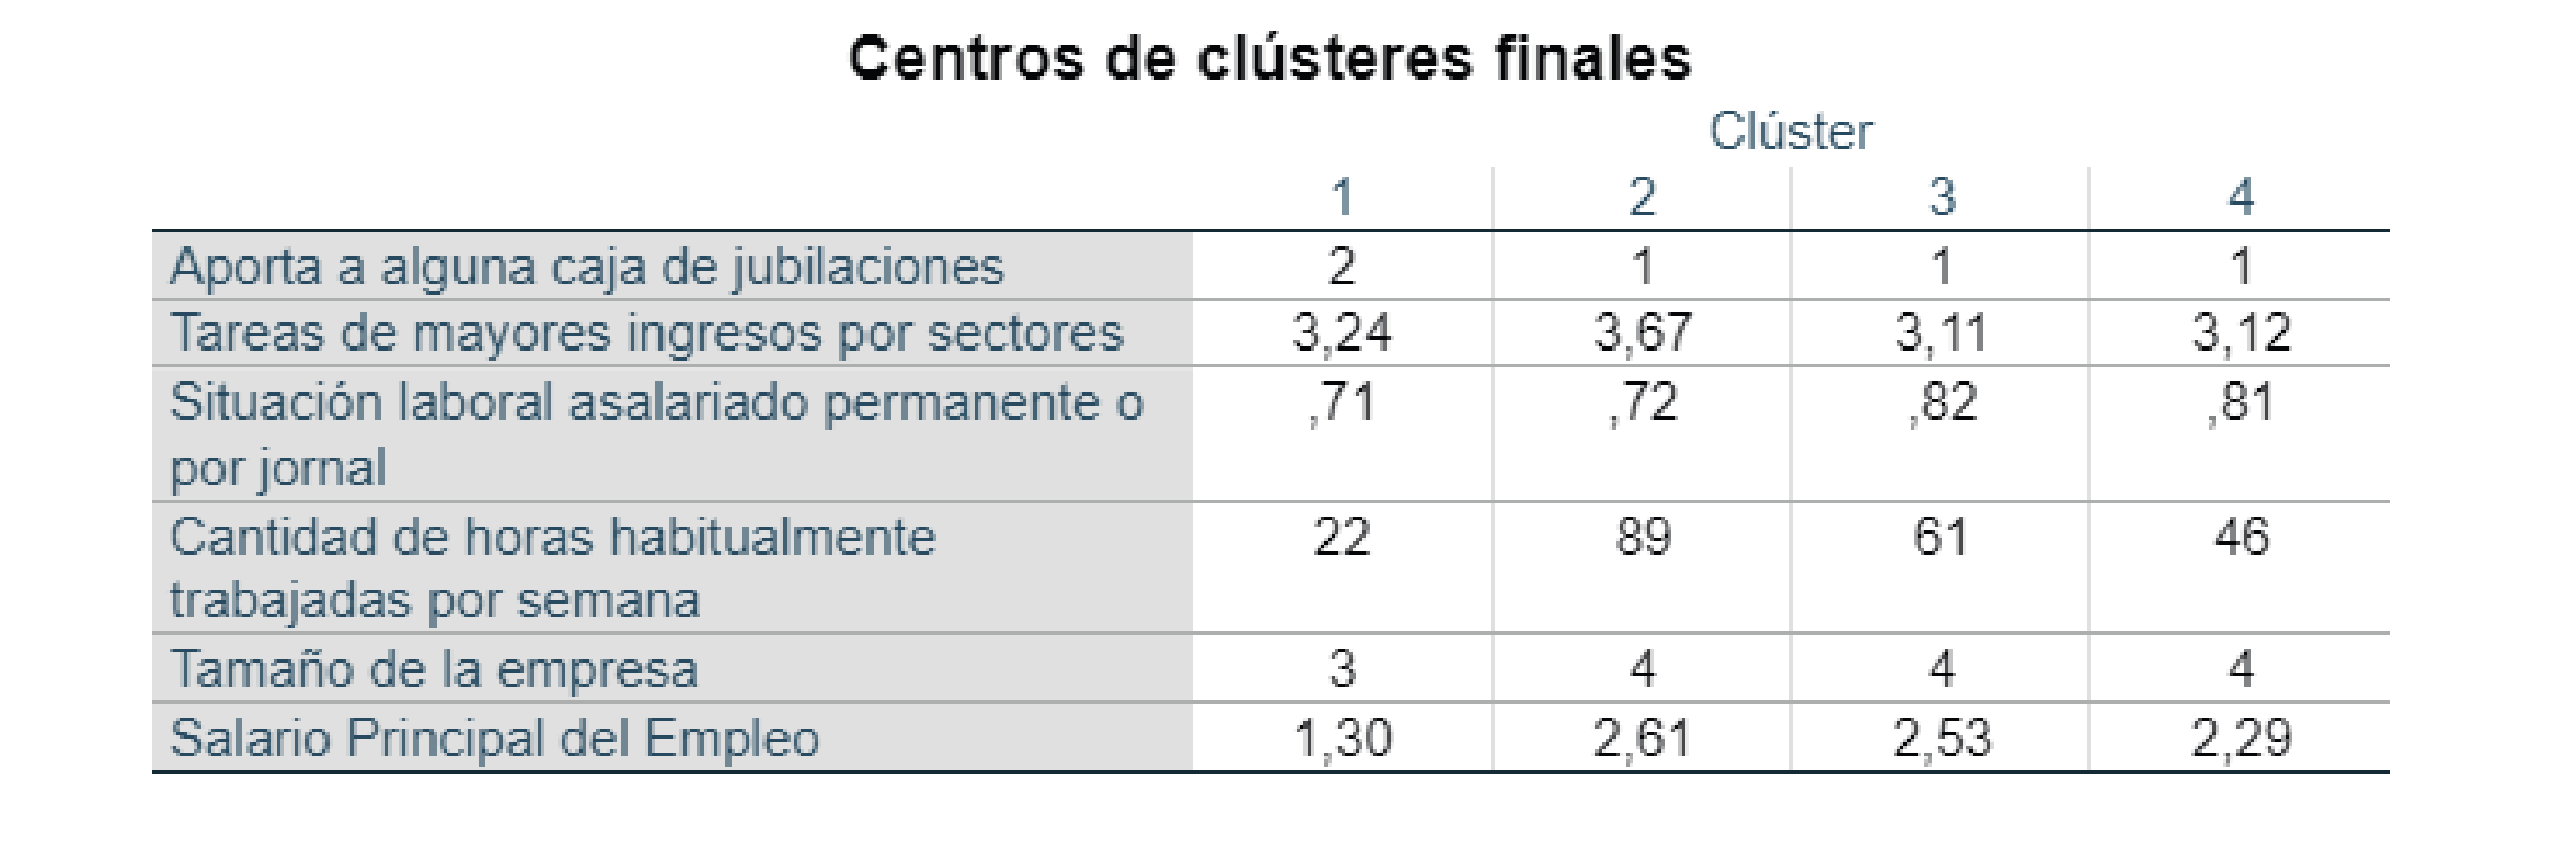 Cluster Final
Asalariados Agrarios 2019.